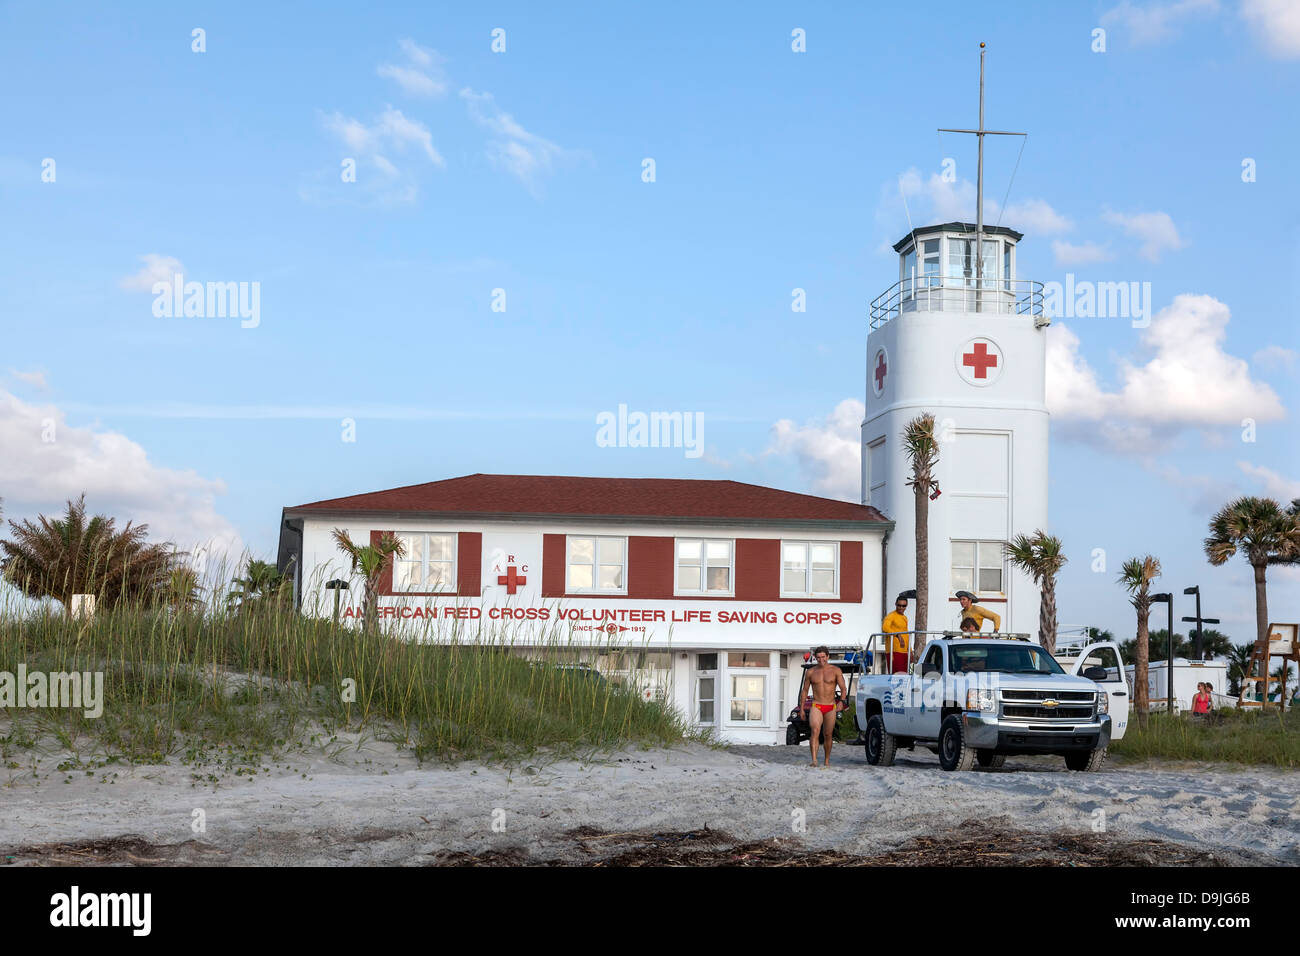 Amerikanischen Roten Kreuzes freiwillig Leben sparen Corps Gebäude, retten, freiwillige und Pickup-Truck auf Jacksonville Beach, Florida. Stockfoto